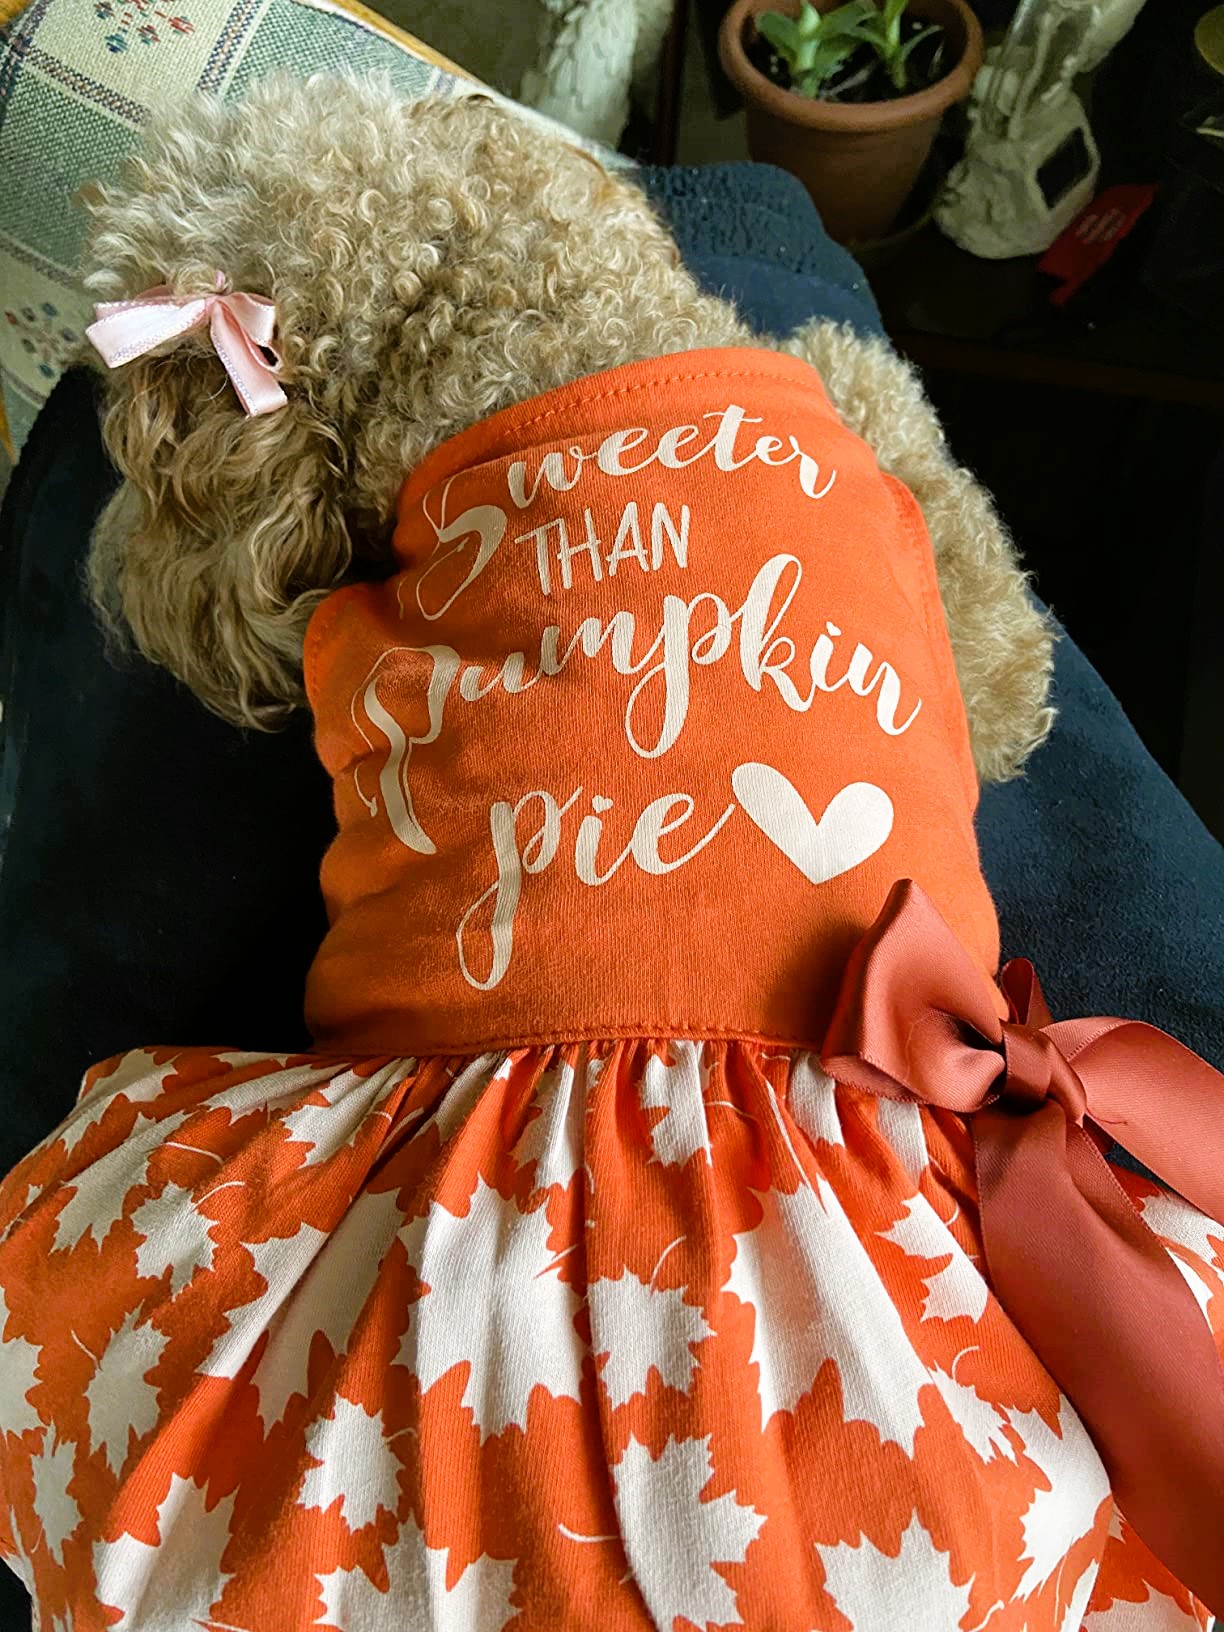 Dog Thanksgiving Dress Sweeter than Pumpkin Pie